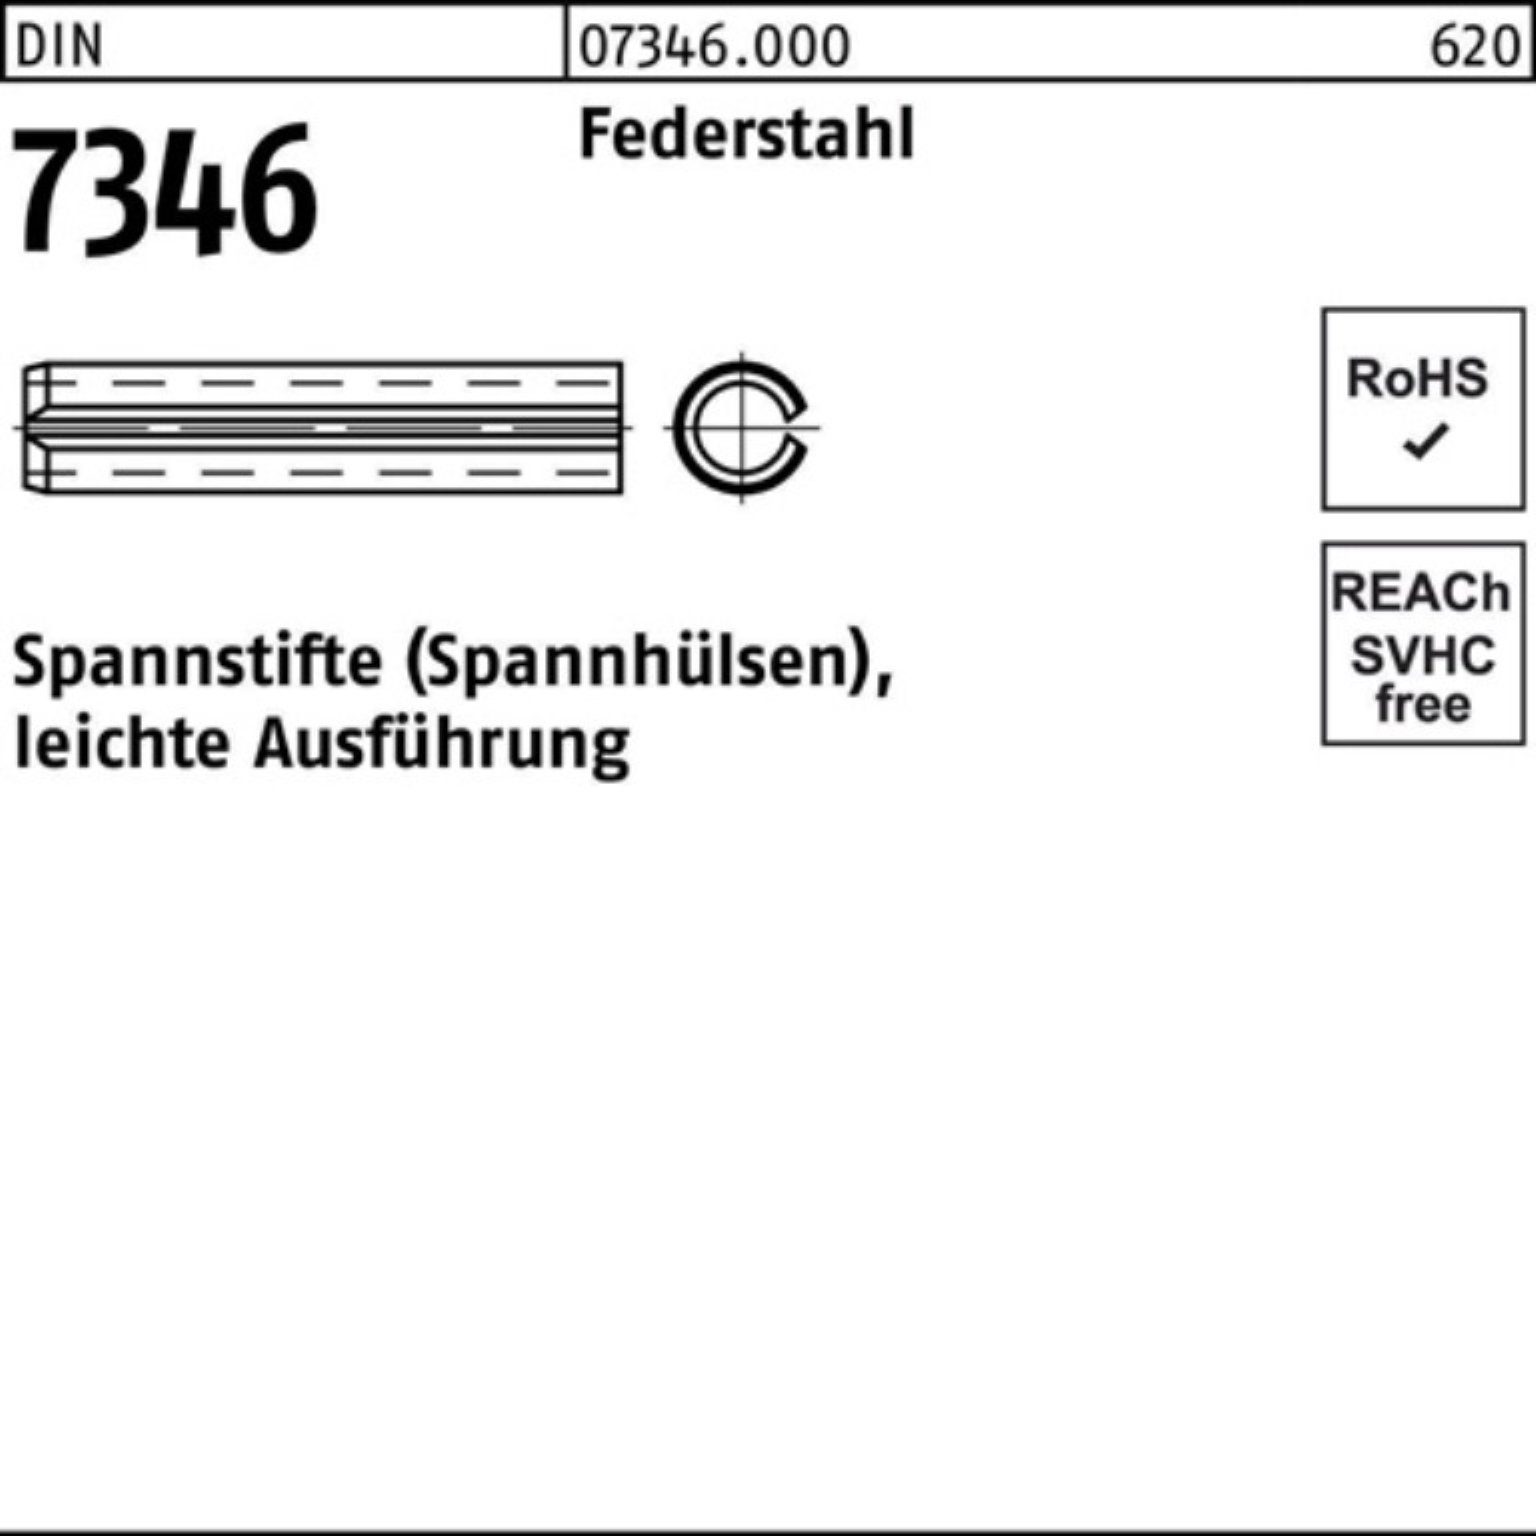 8 Spannstift Ausf. DIN 5x leichte Reyher Spannstift 7346/ISO 200er 13337 Federstahl Pack